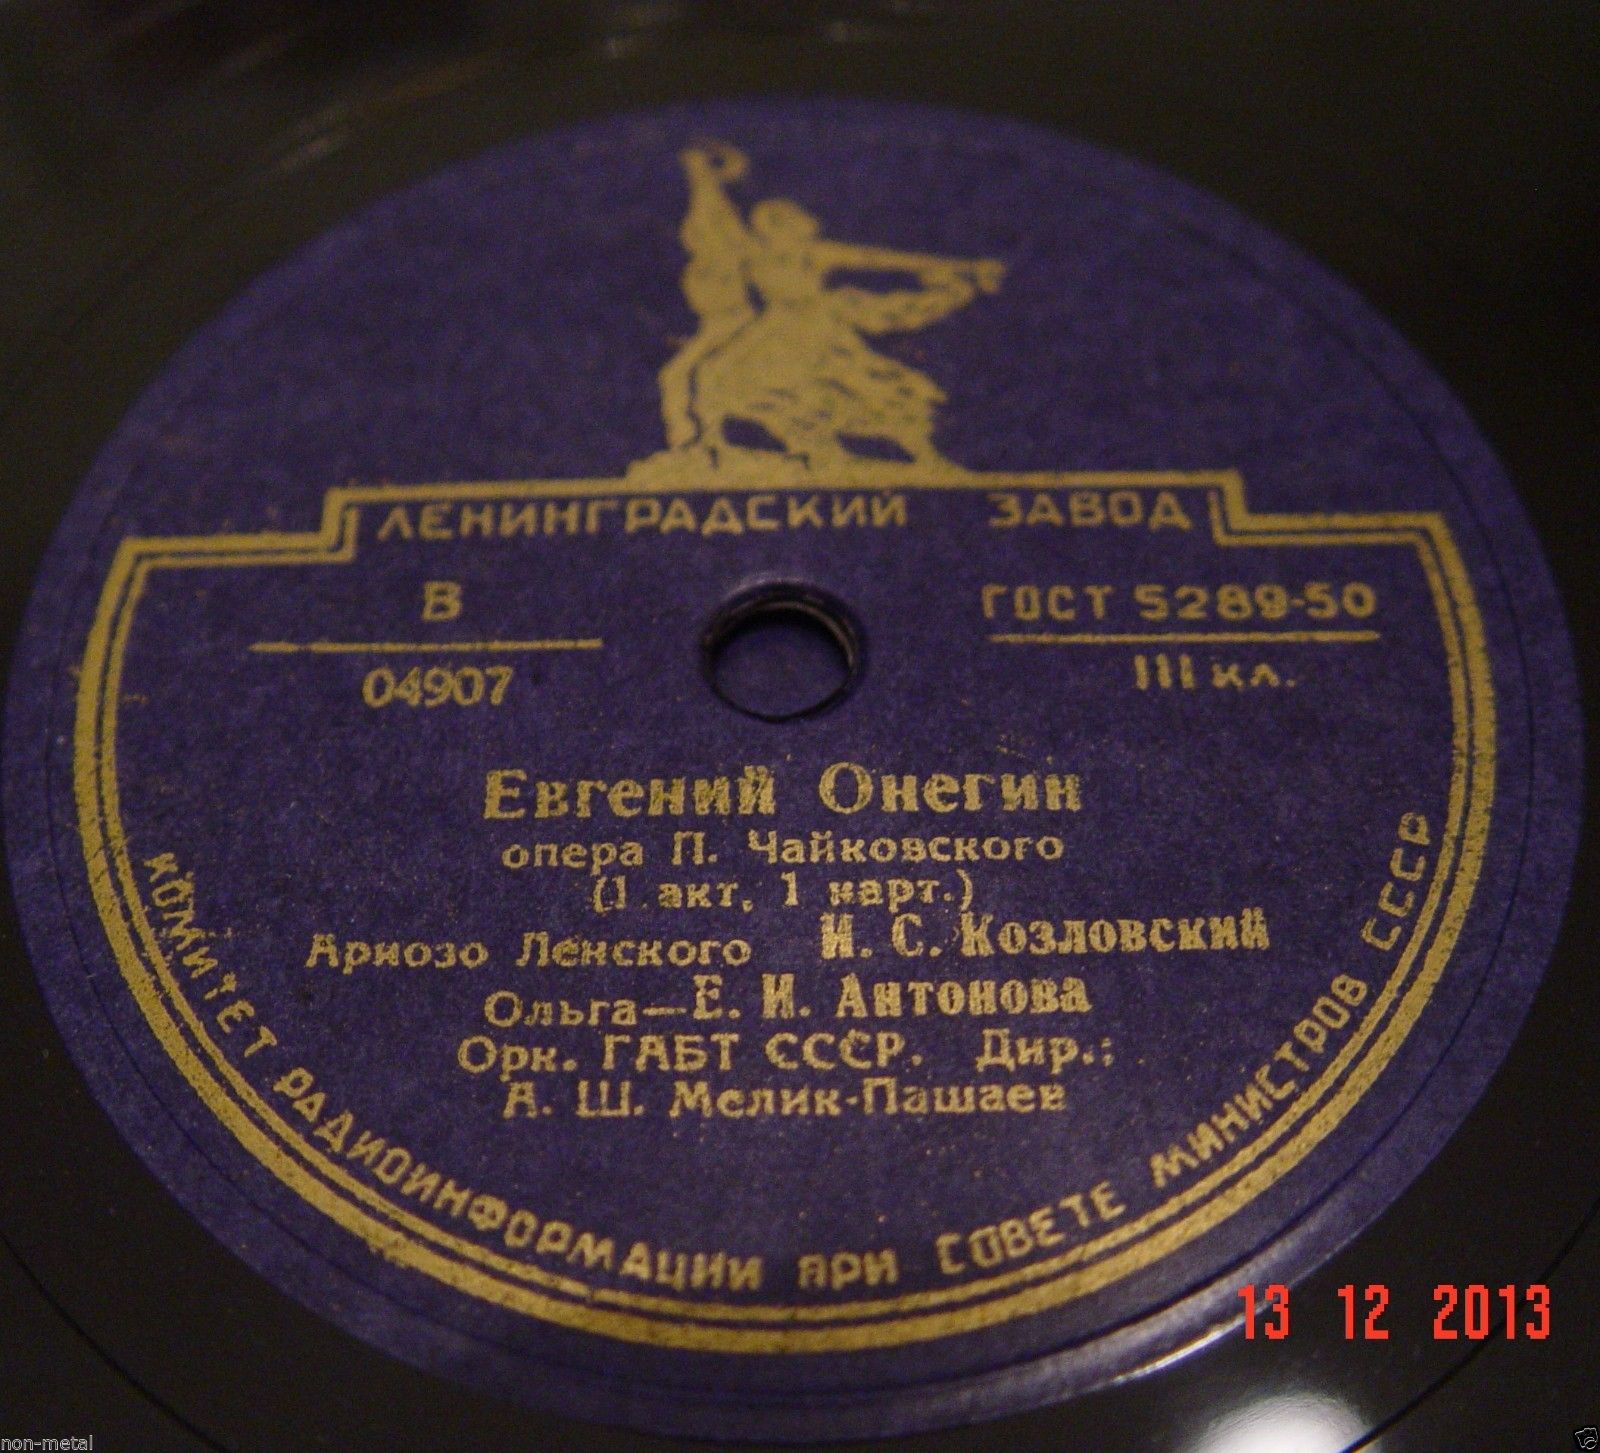 Опера П. Чайковского «Евгений Онегин» в грамзаписи (полностью)